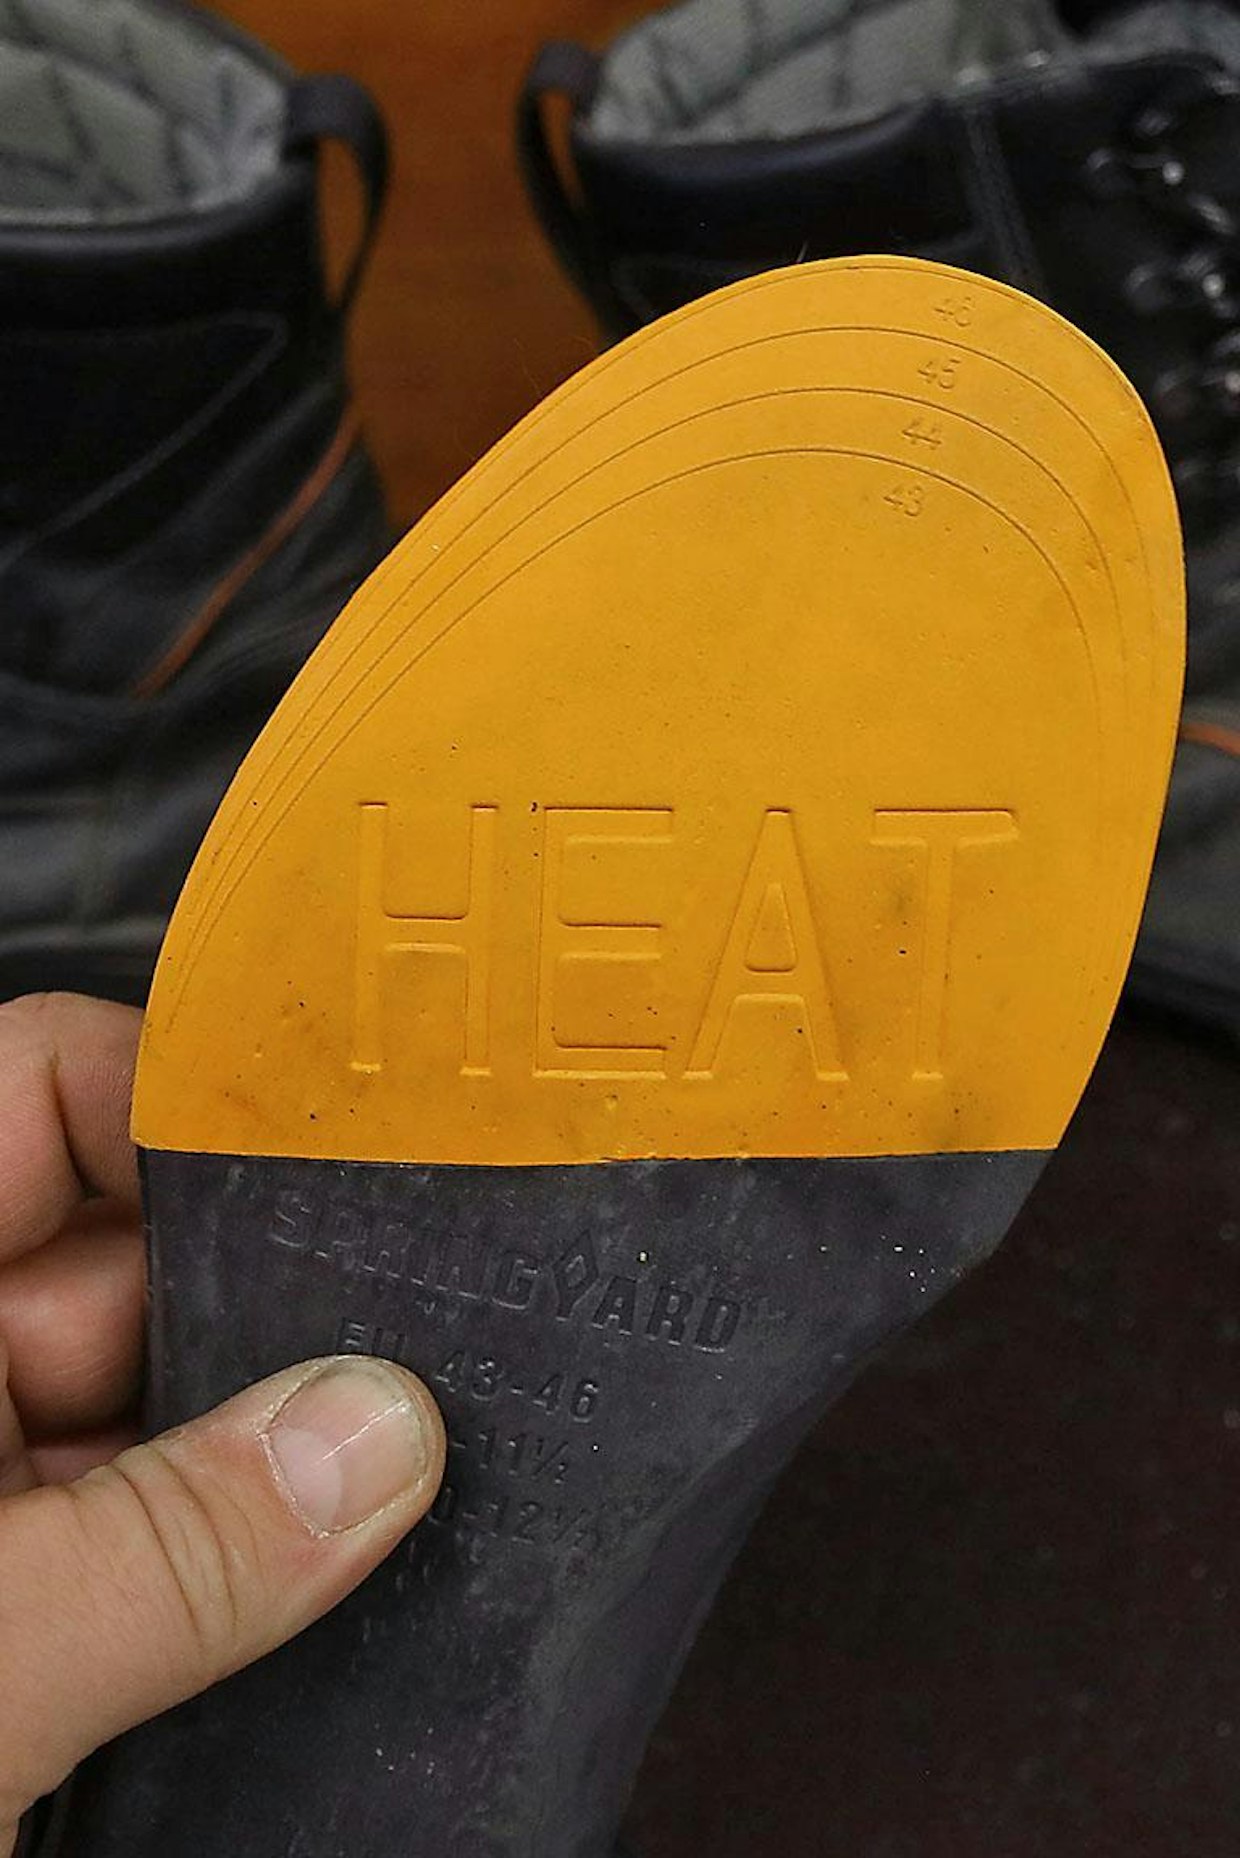 Pohjallisissa on lämmityksen sisältävä alue näkyvissä Heat-merkinnällä. Pohjallisissa on leikkausviivat sovittamisen helpottamiseksi eri kenkäkokoihin. Suositeltavaa on kuitenkin ensin verrata alkuperäisiin pohjallisiin, sekä suorittaa pienennys koko kerrallaan – kaikkien kenkävalmistajien lesti ei ole samanmuotoinen.